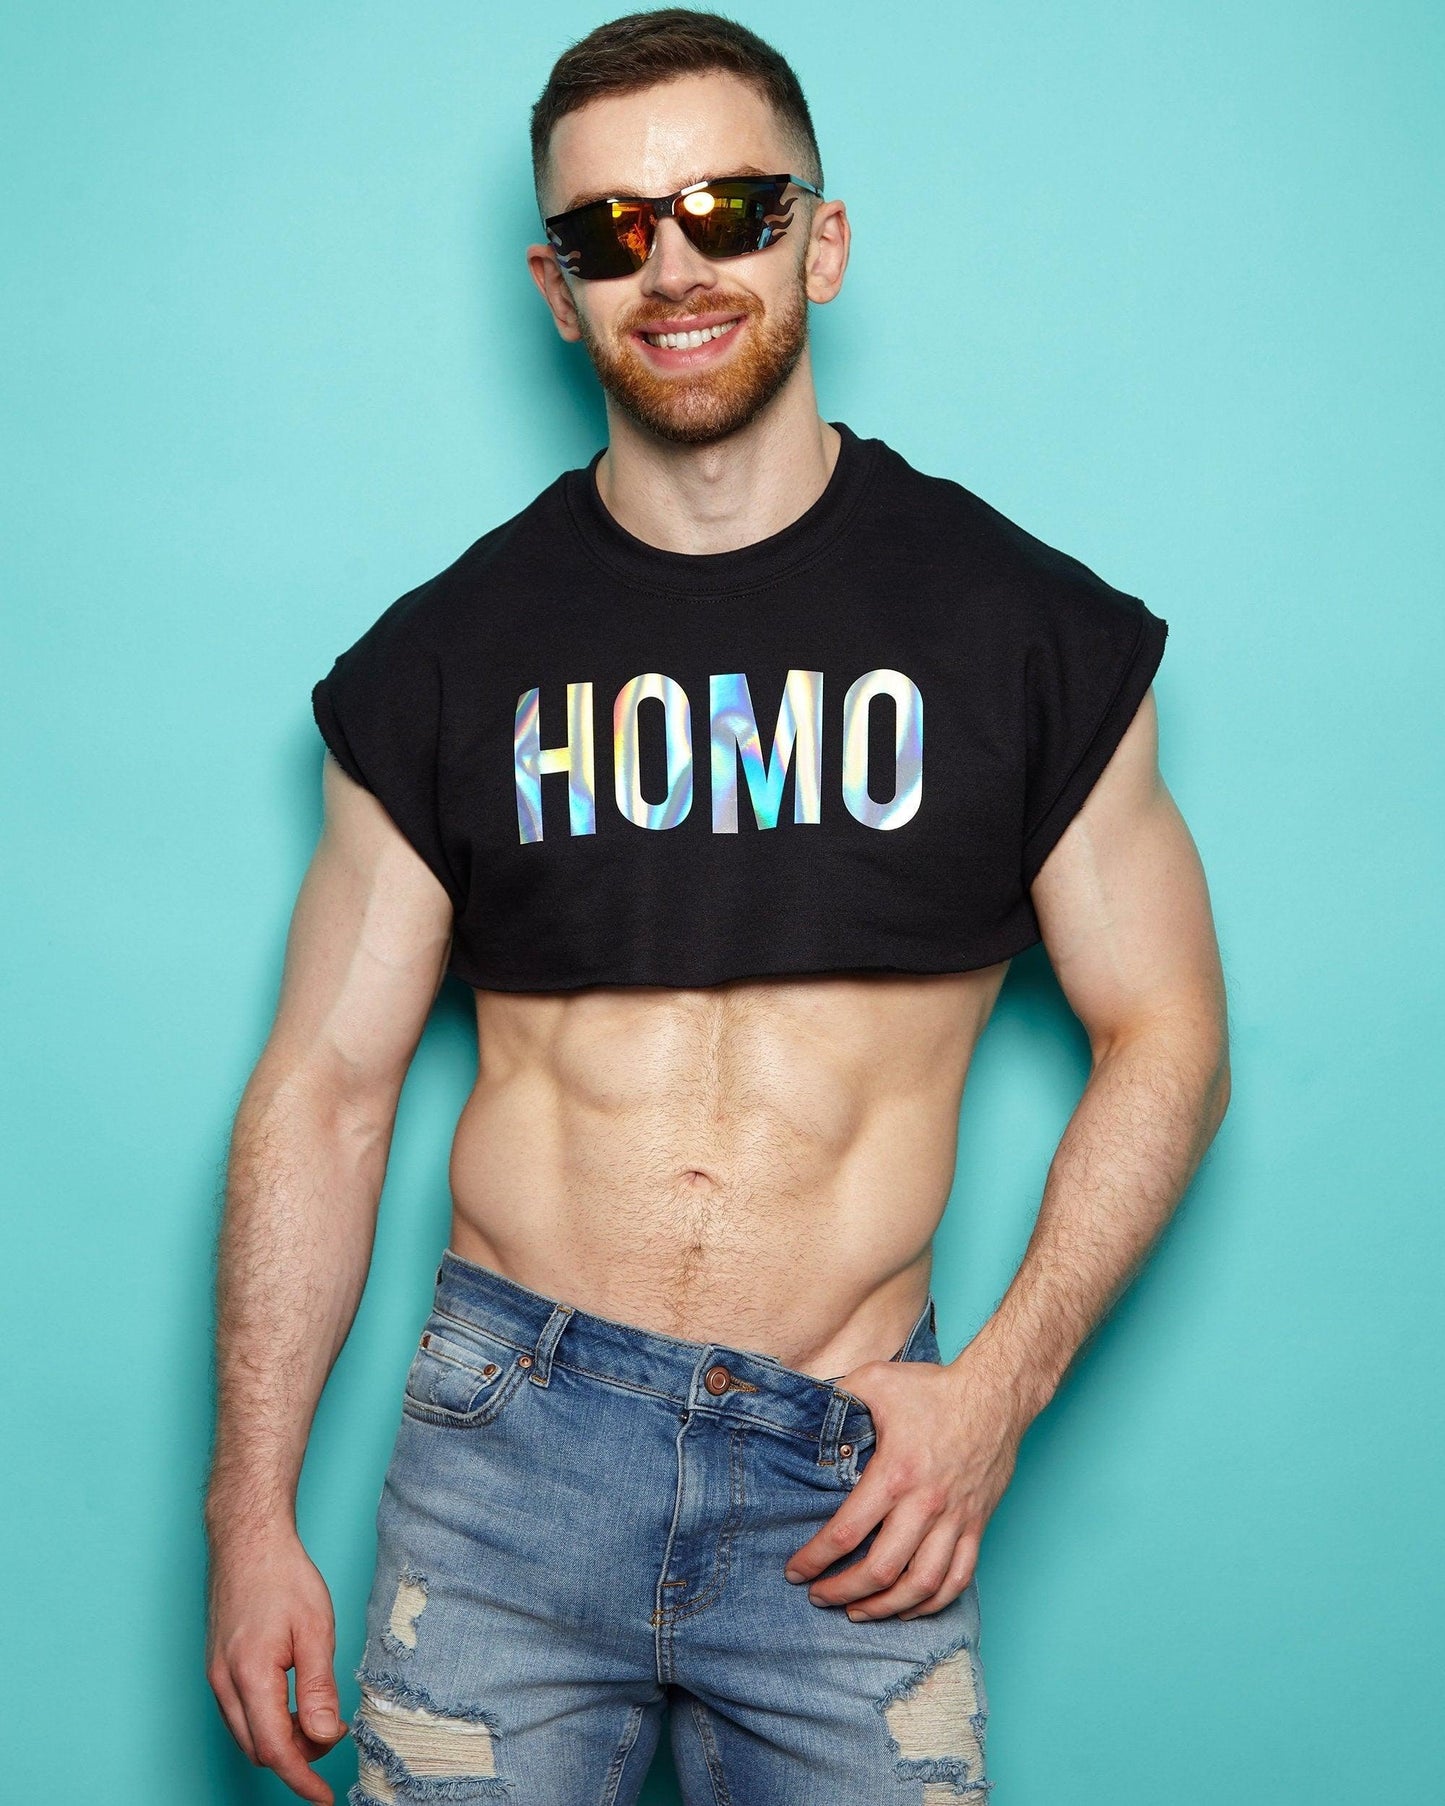 HOMO Retro Cut, mens sweatshirt crop top - Hologram on Black